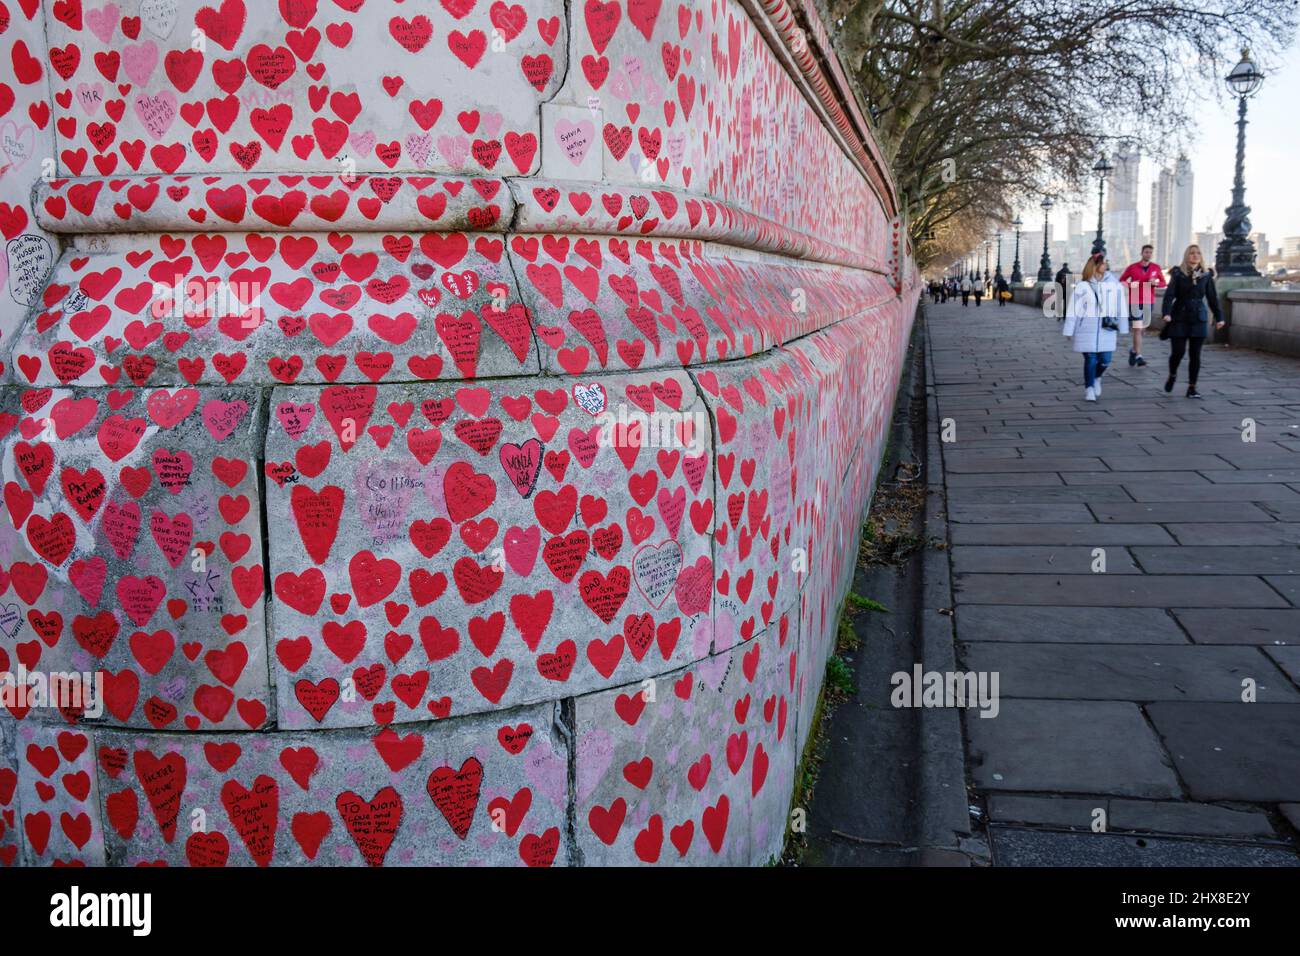 Il Memoriale di Covid accanto al Tamigi dipinse cuori in omaggio alle vittime del virus COVID, Londra, Inghilterra, Gran Bretagna Foto Stock